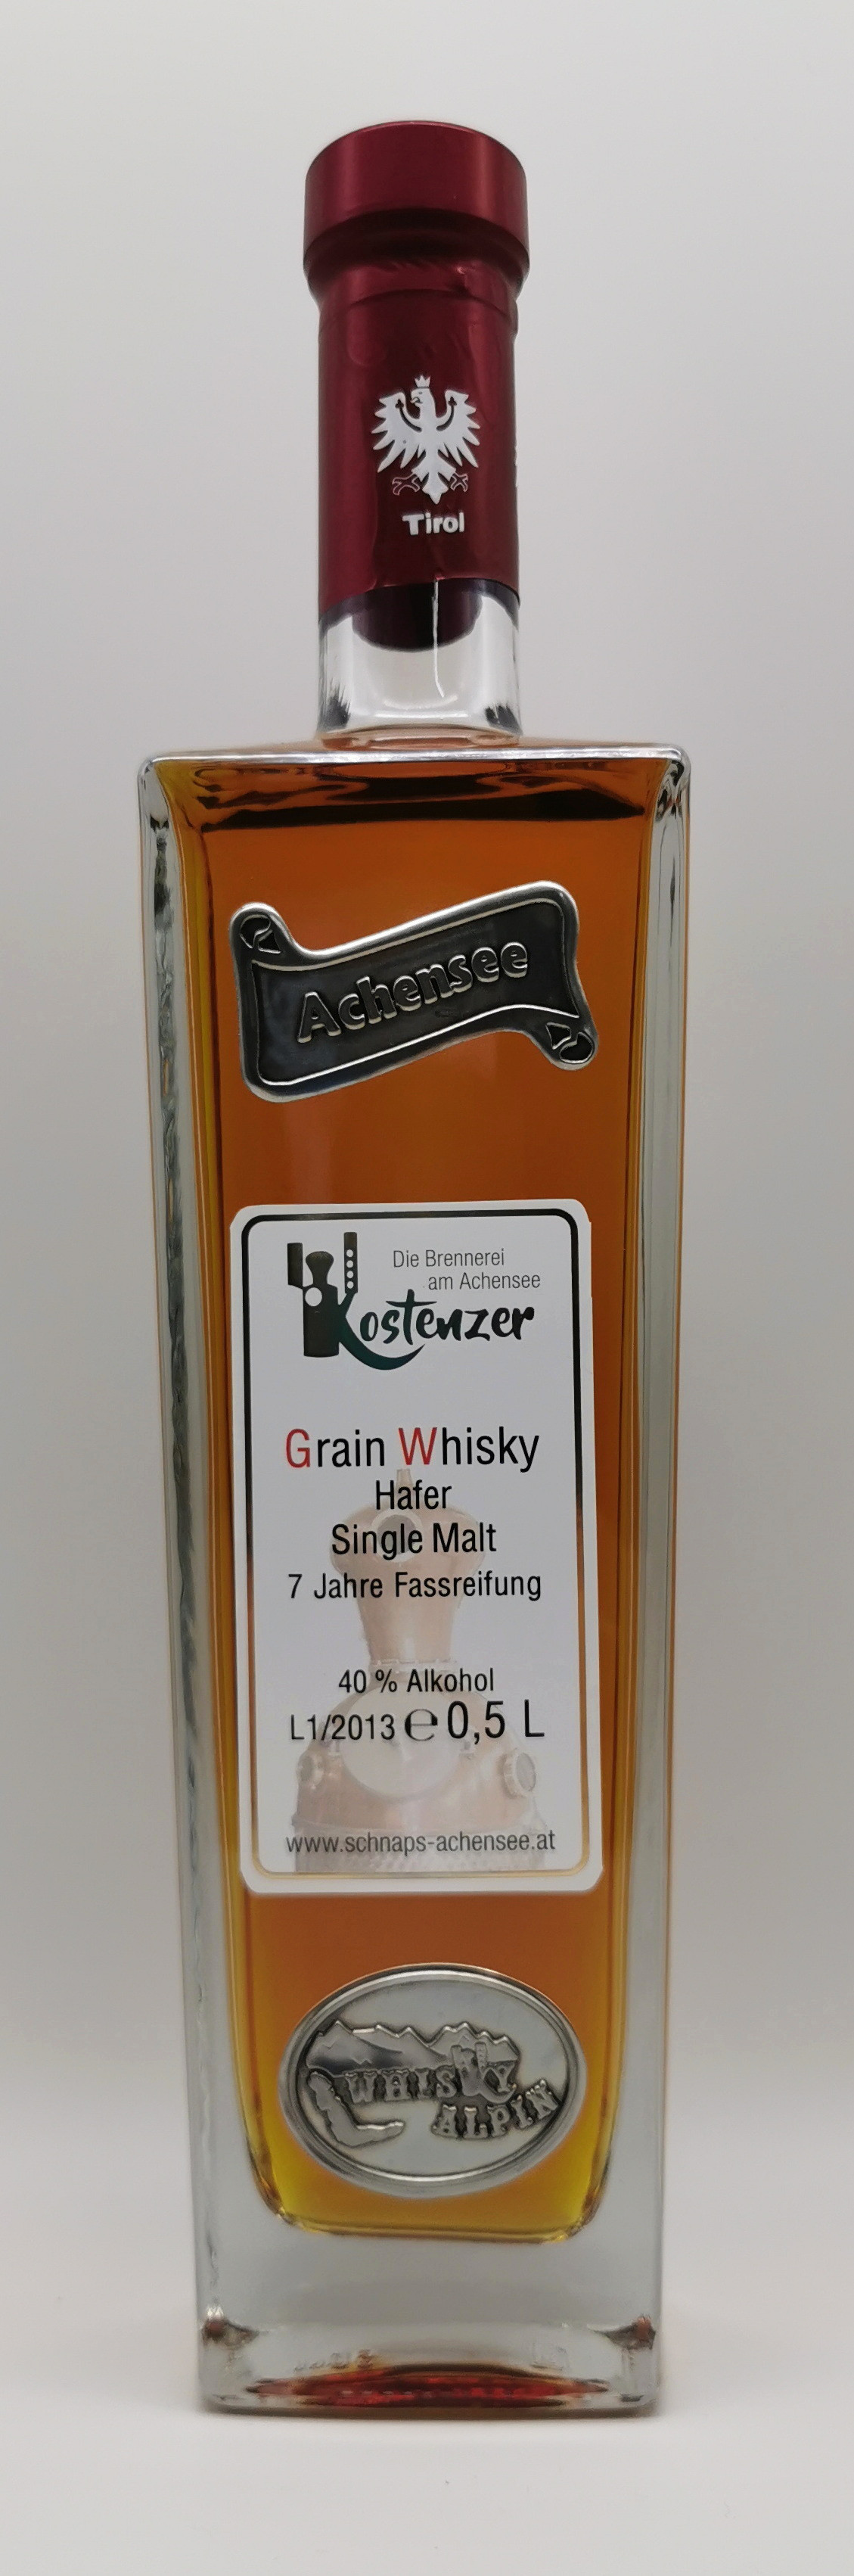 Grain Whisky Hafer